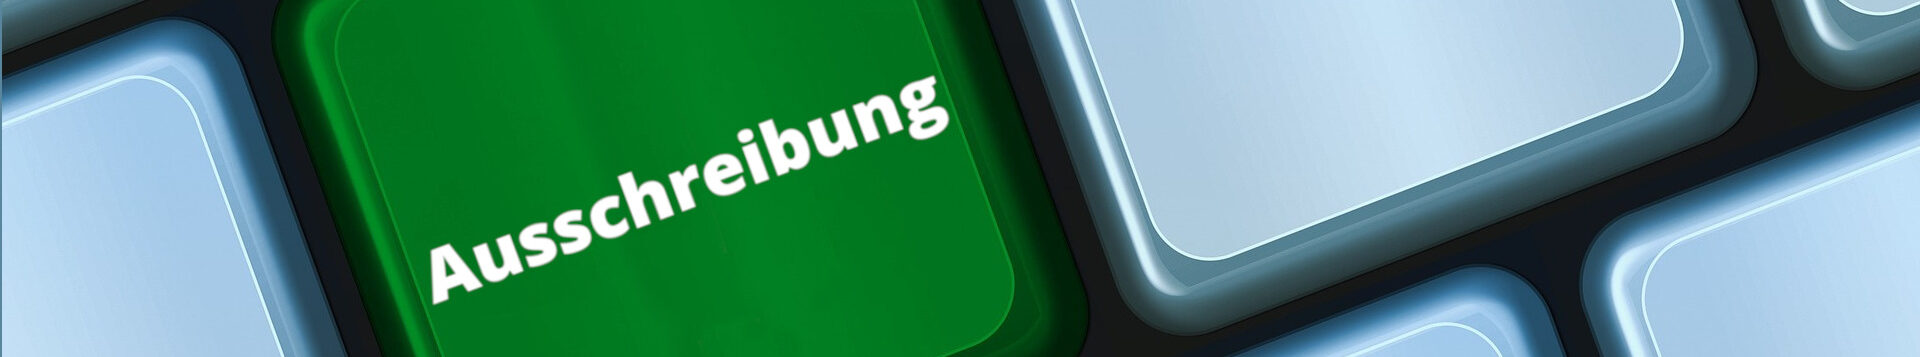 Weiße Tastatur, grüne Taste mit Beschriftung "Ausschreibung"